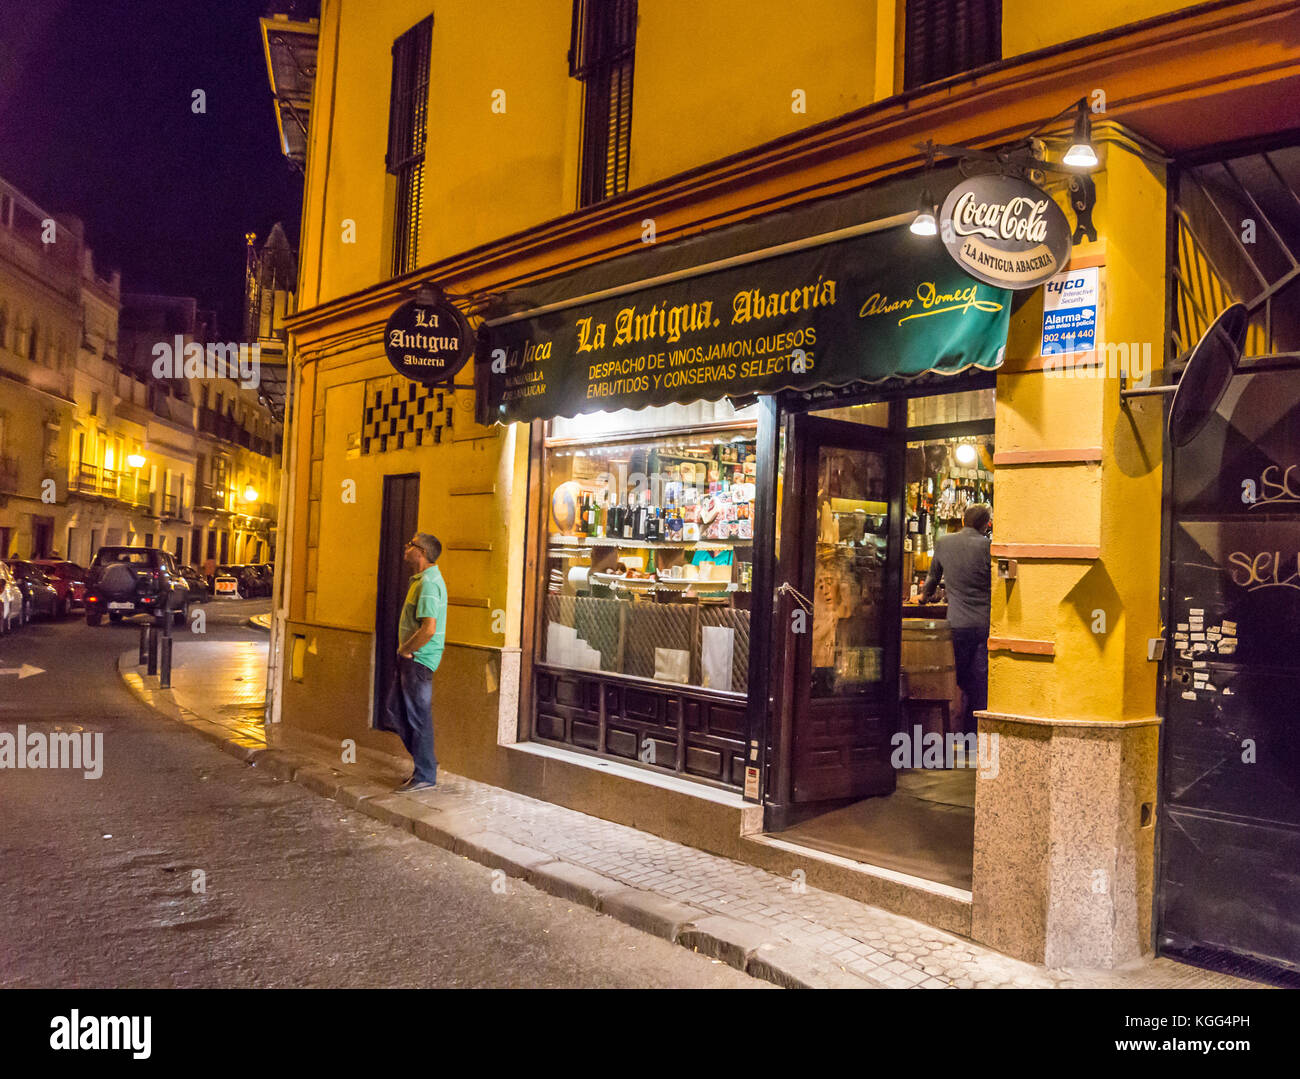 La Antigua Abaceria tapas bar, Calle Pureza, Triana, Seville, Andalucia, Spain Stock Photo